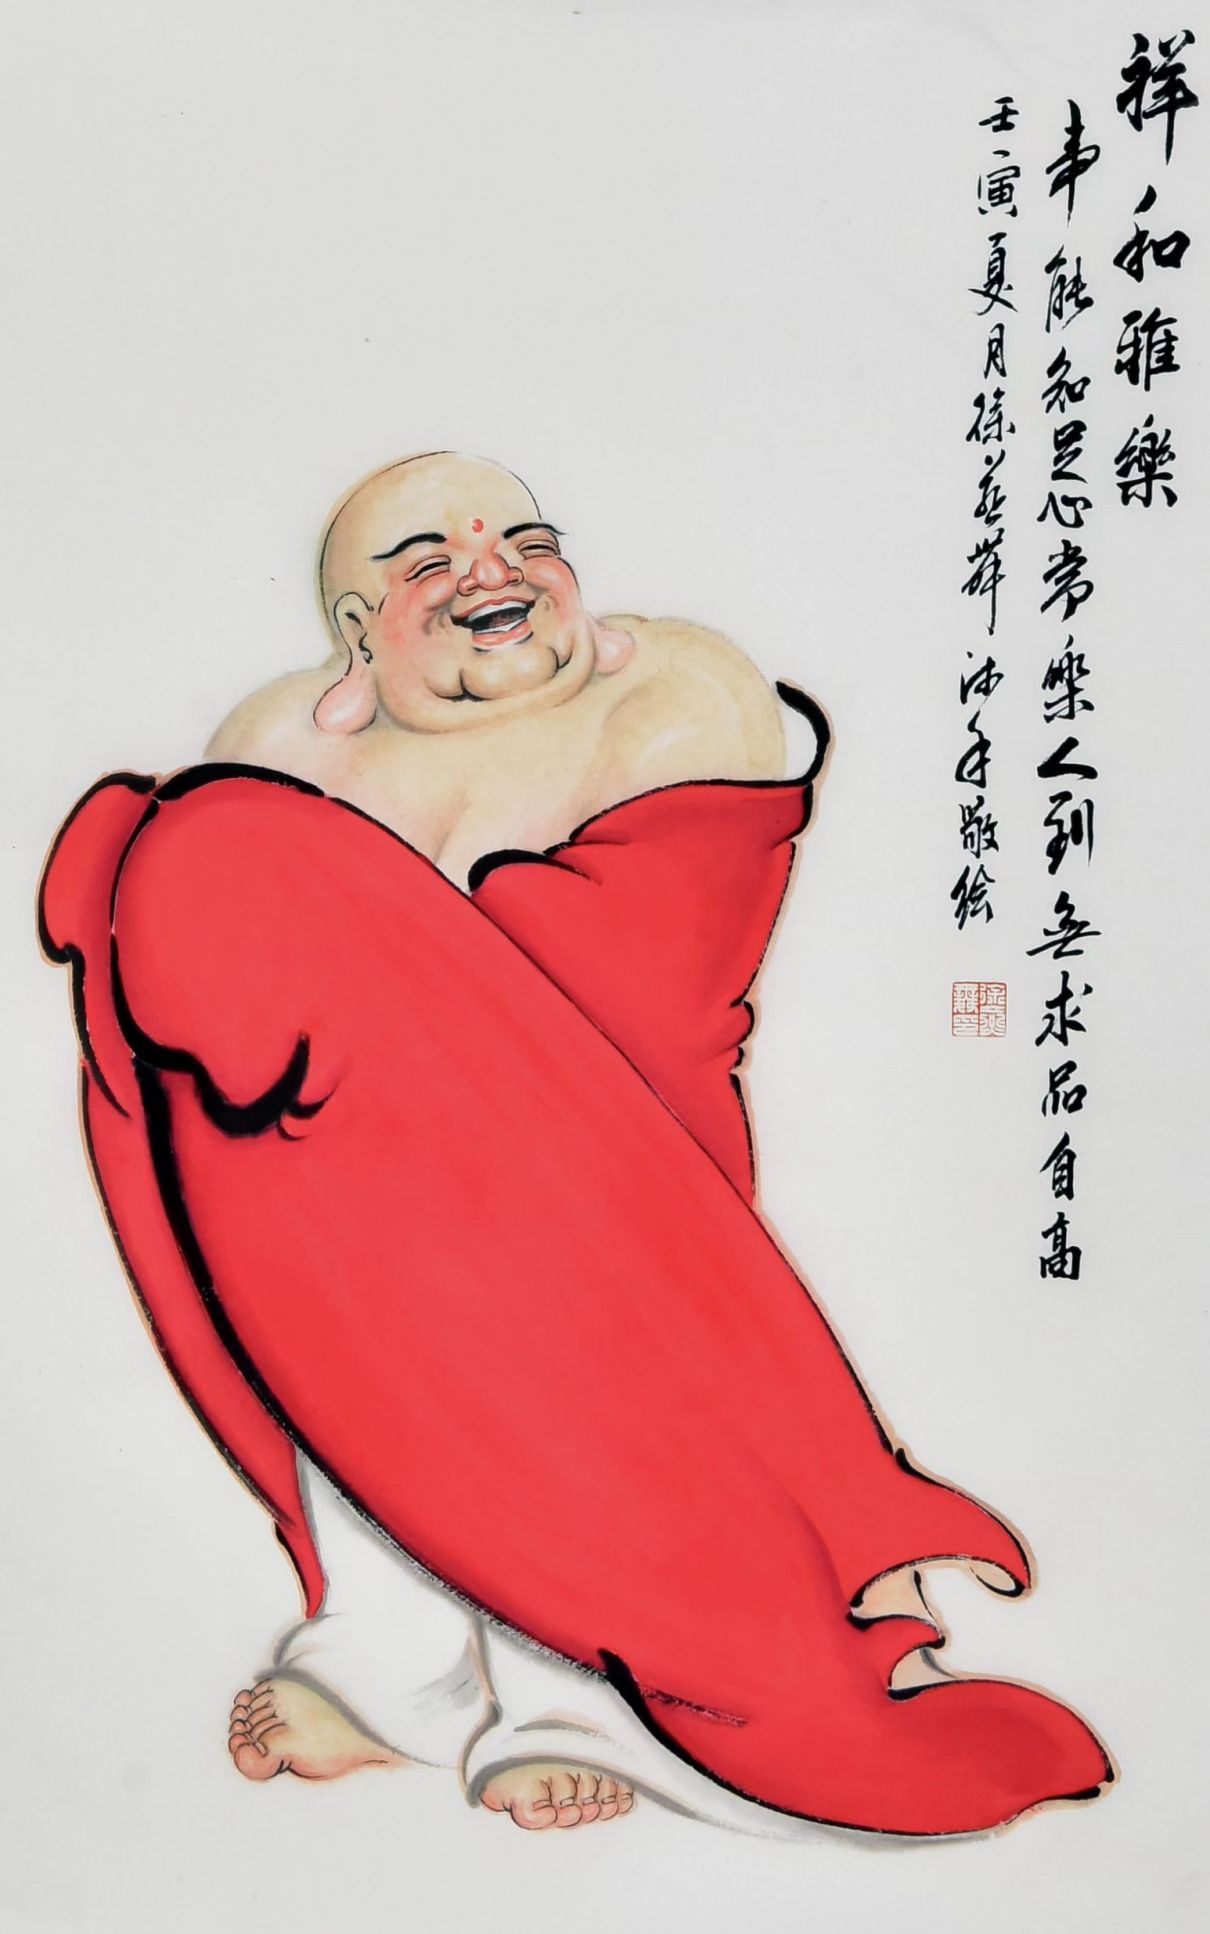 有点文化科技有限公司携手青年实力派画家徐燕标推出禅画系列藏品